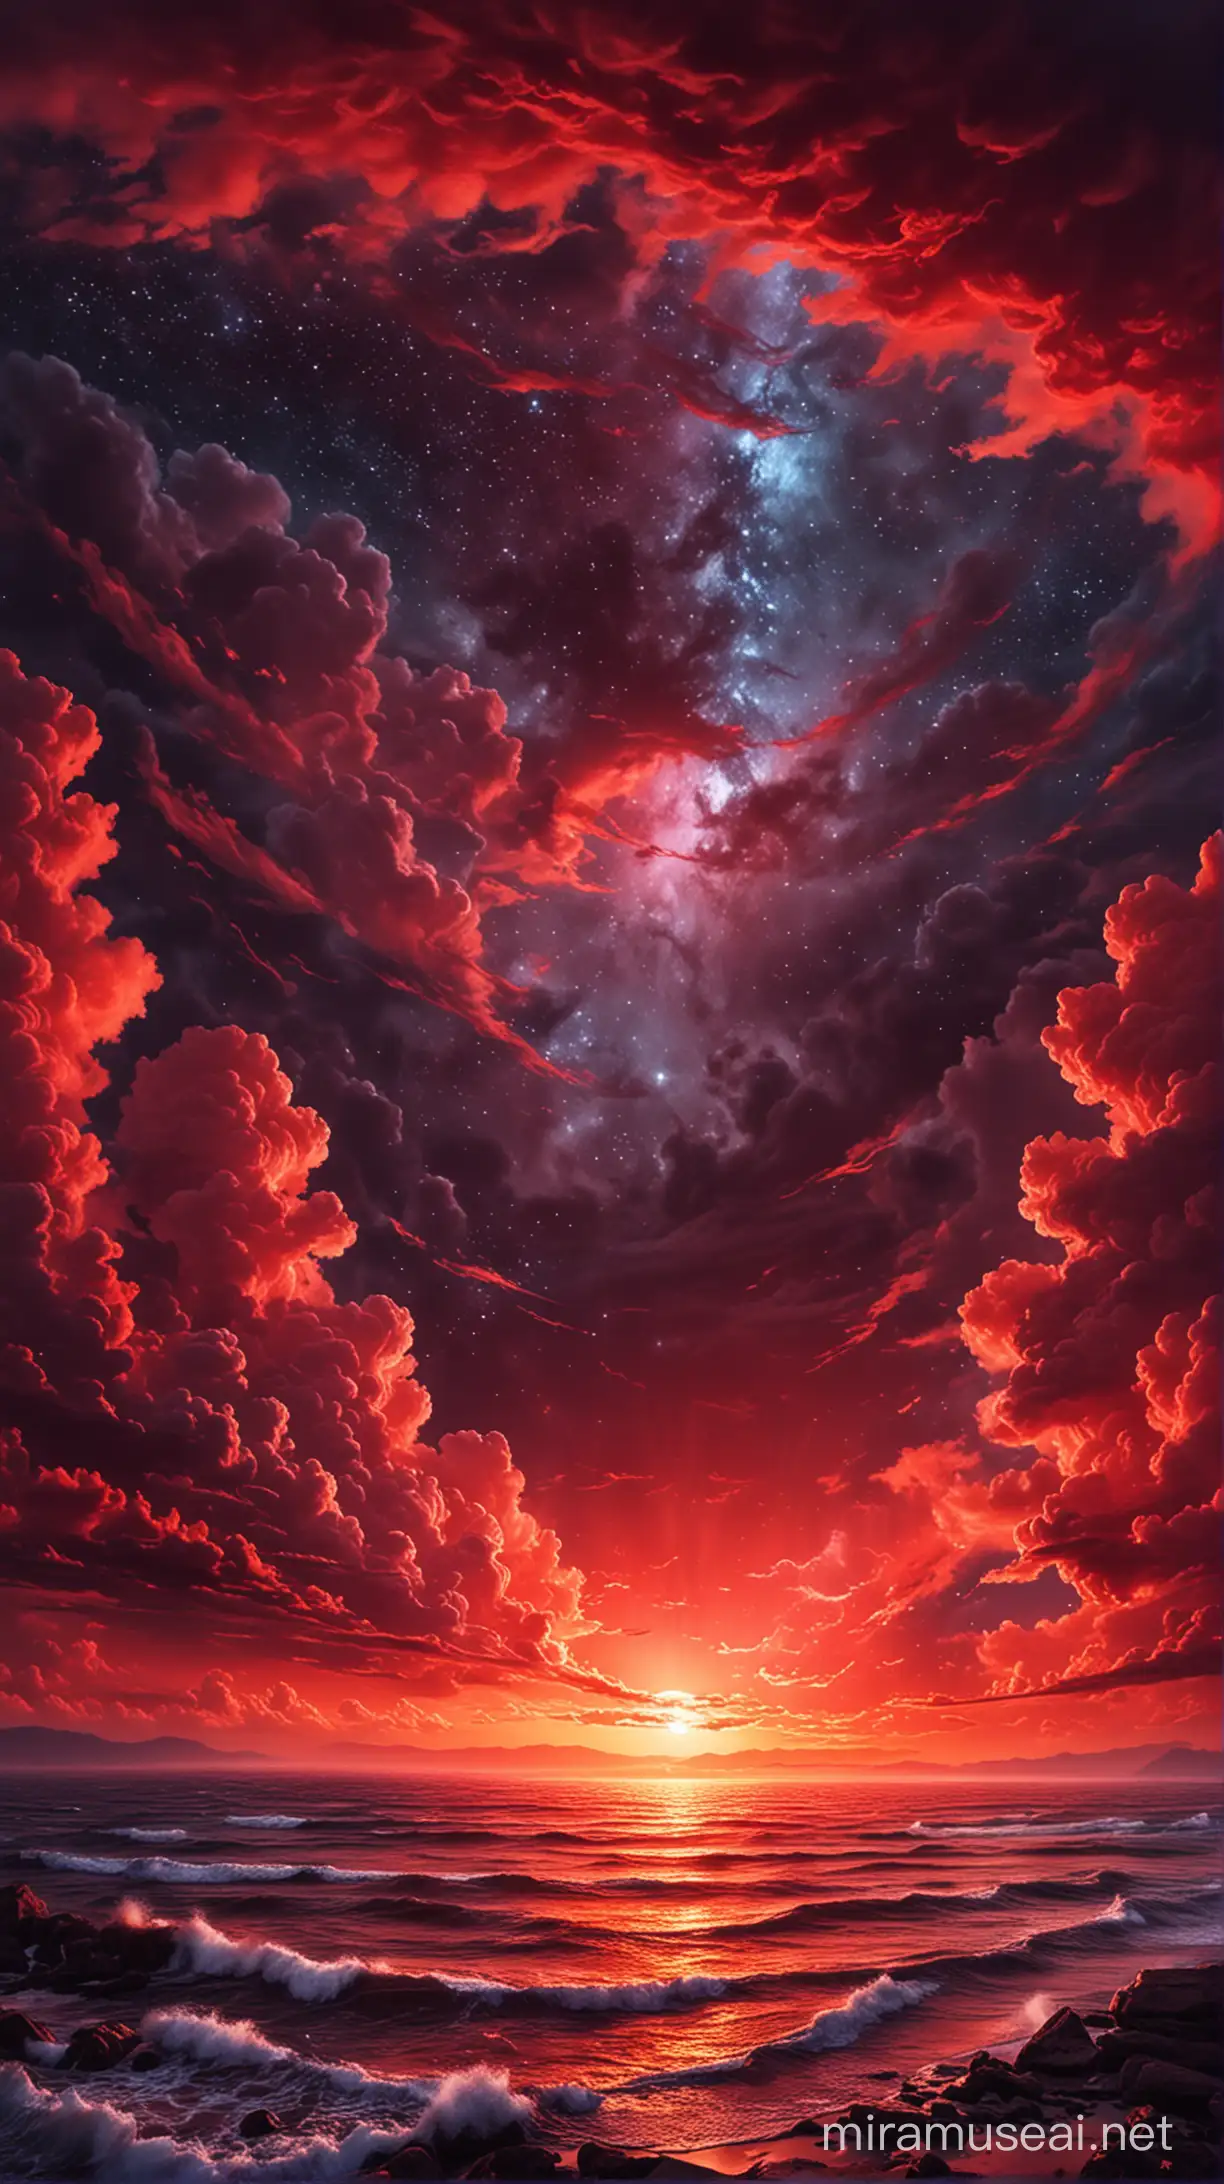 Red dream sky